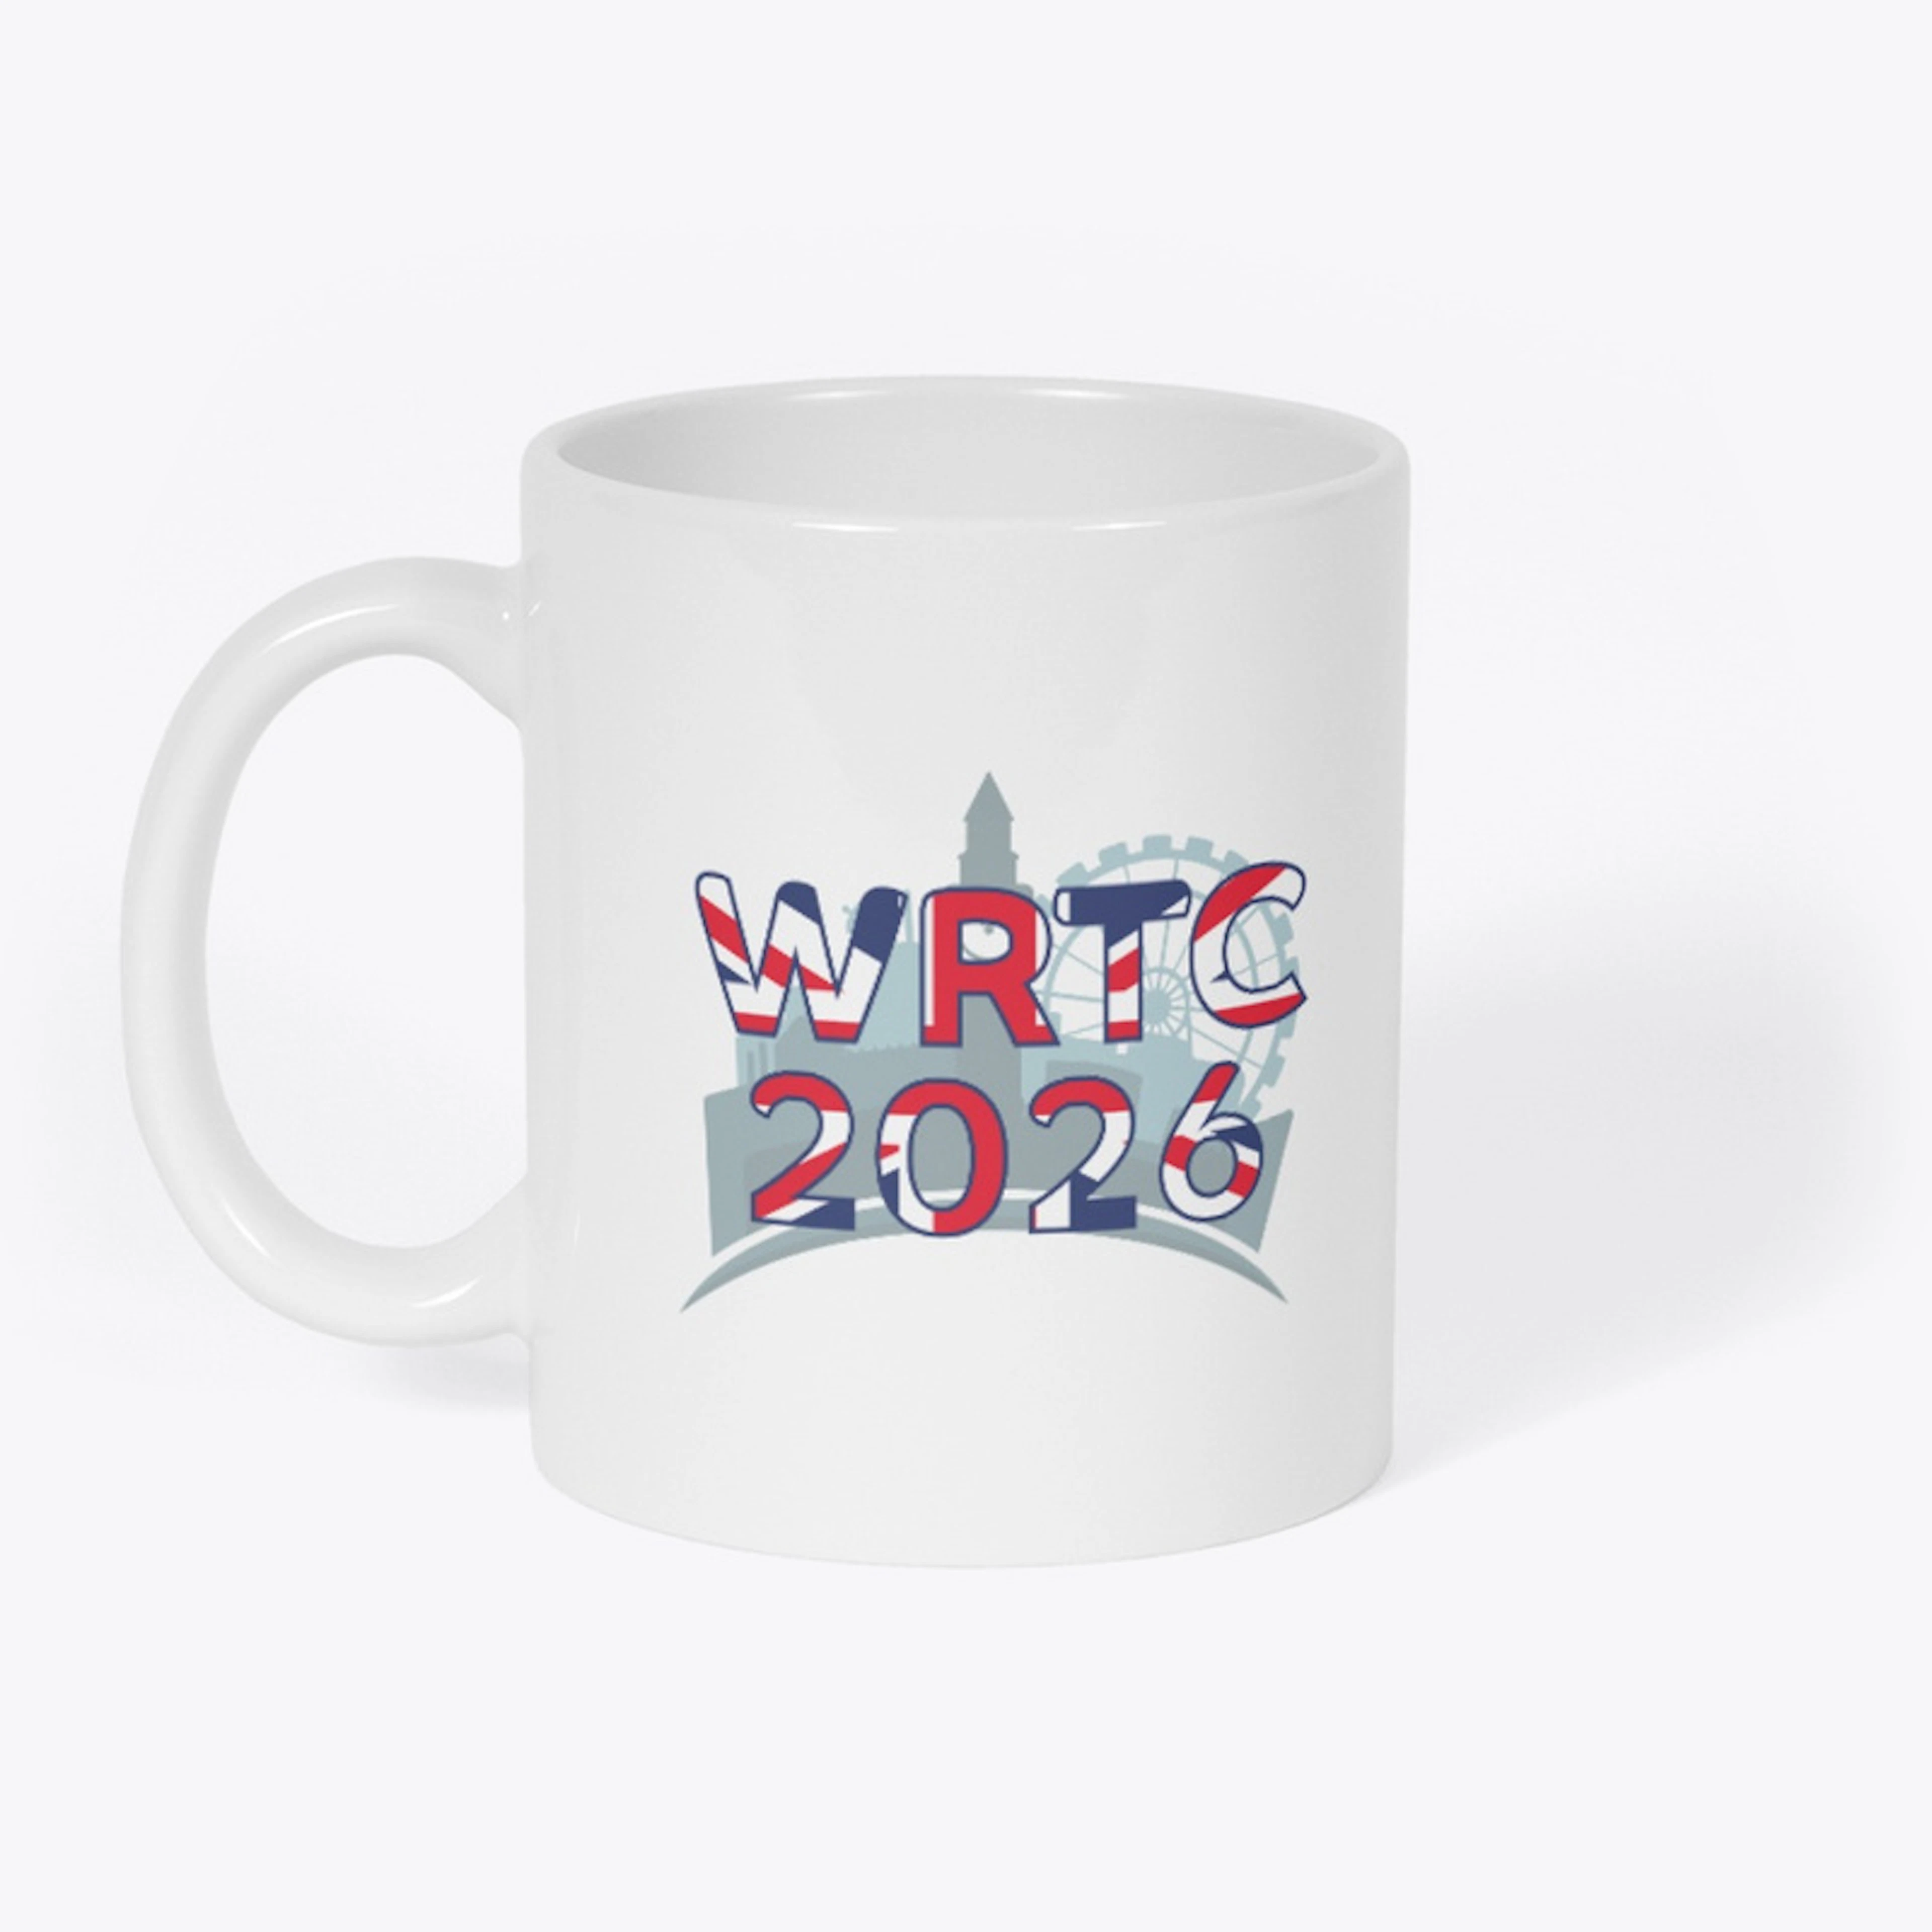 WRTC 2026 Merchandise